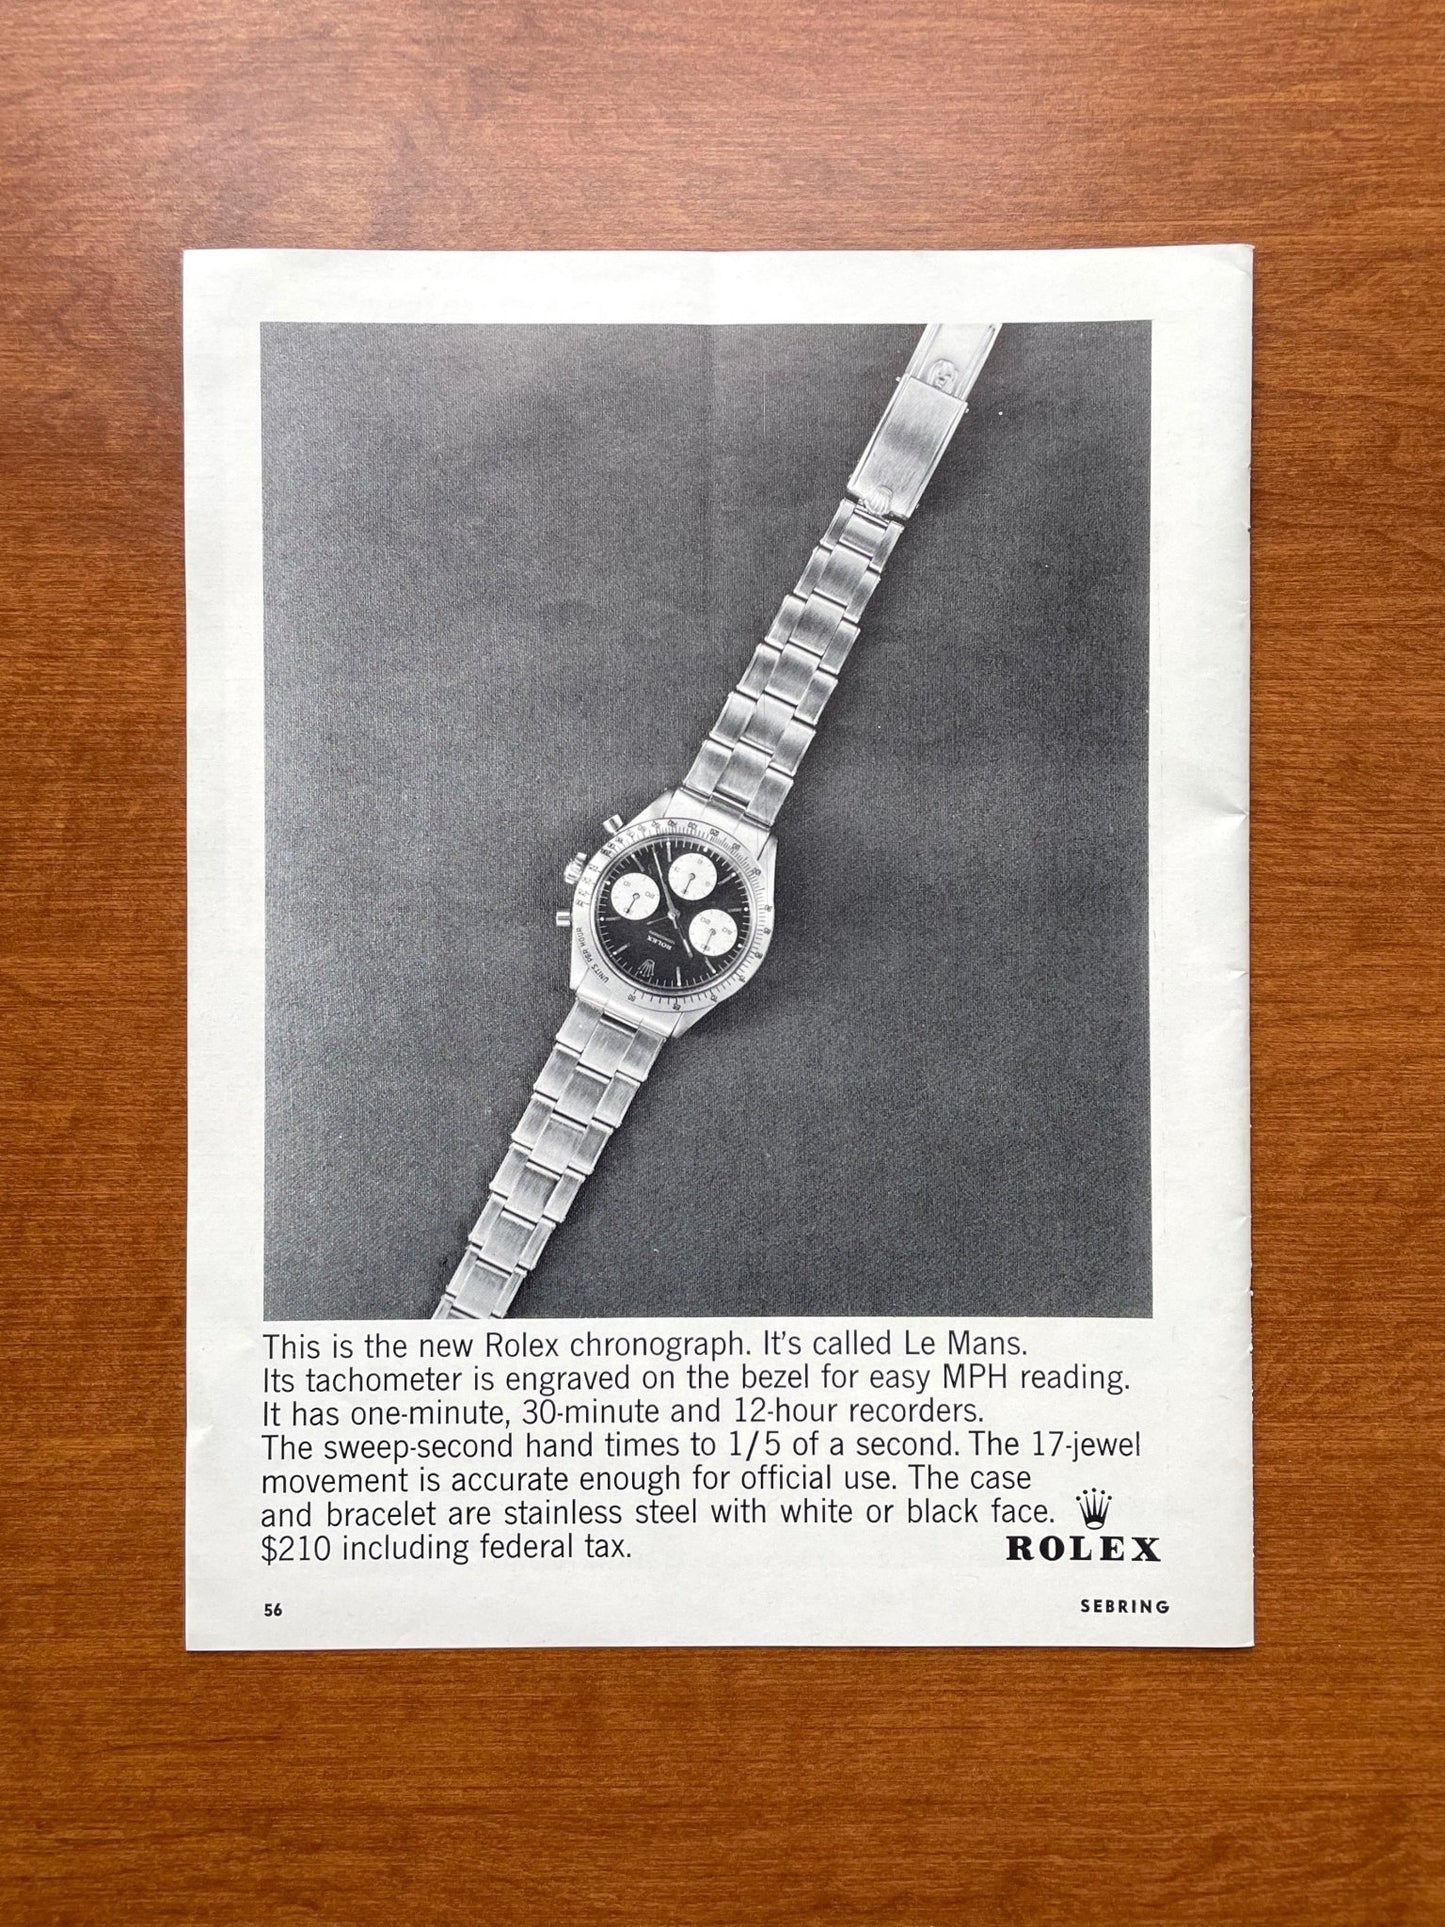 1964 Rolex Daytona Ref. 6239 "It's called Le Mans." Advertisement